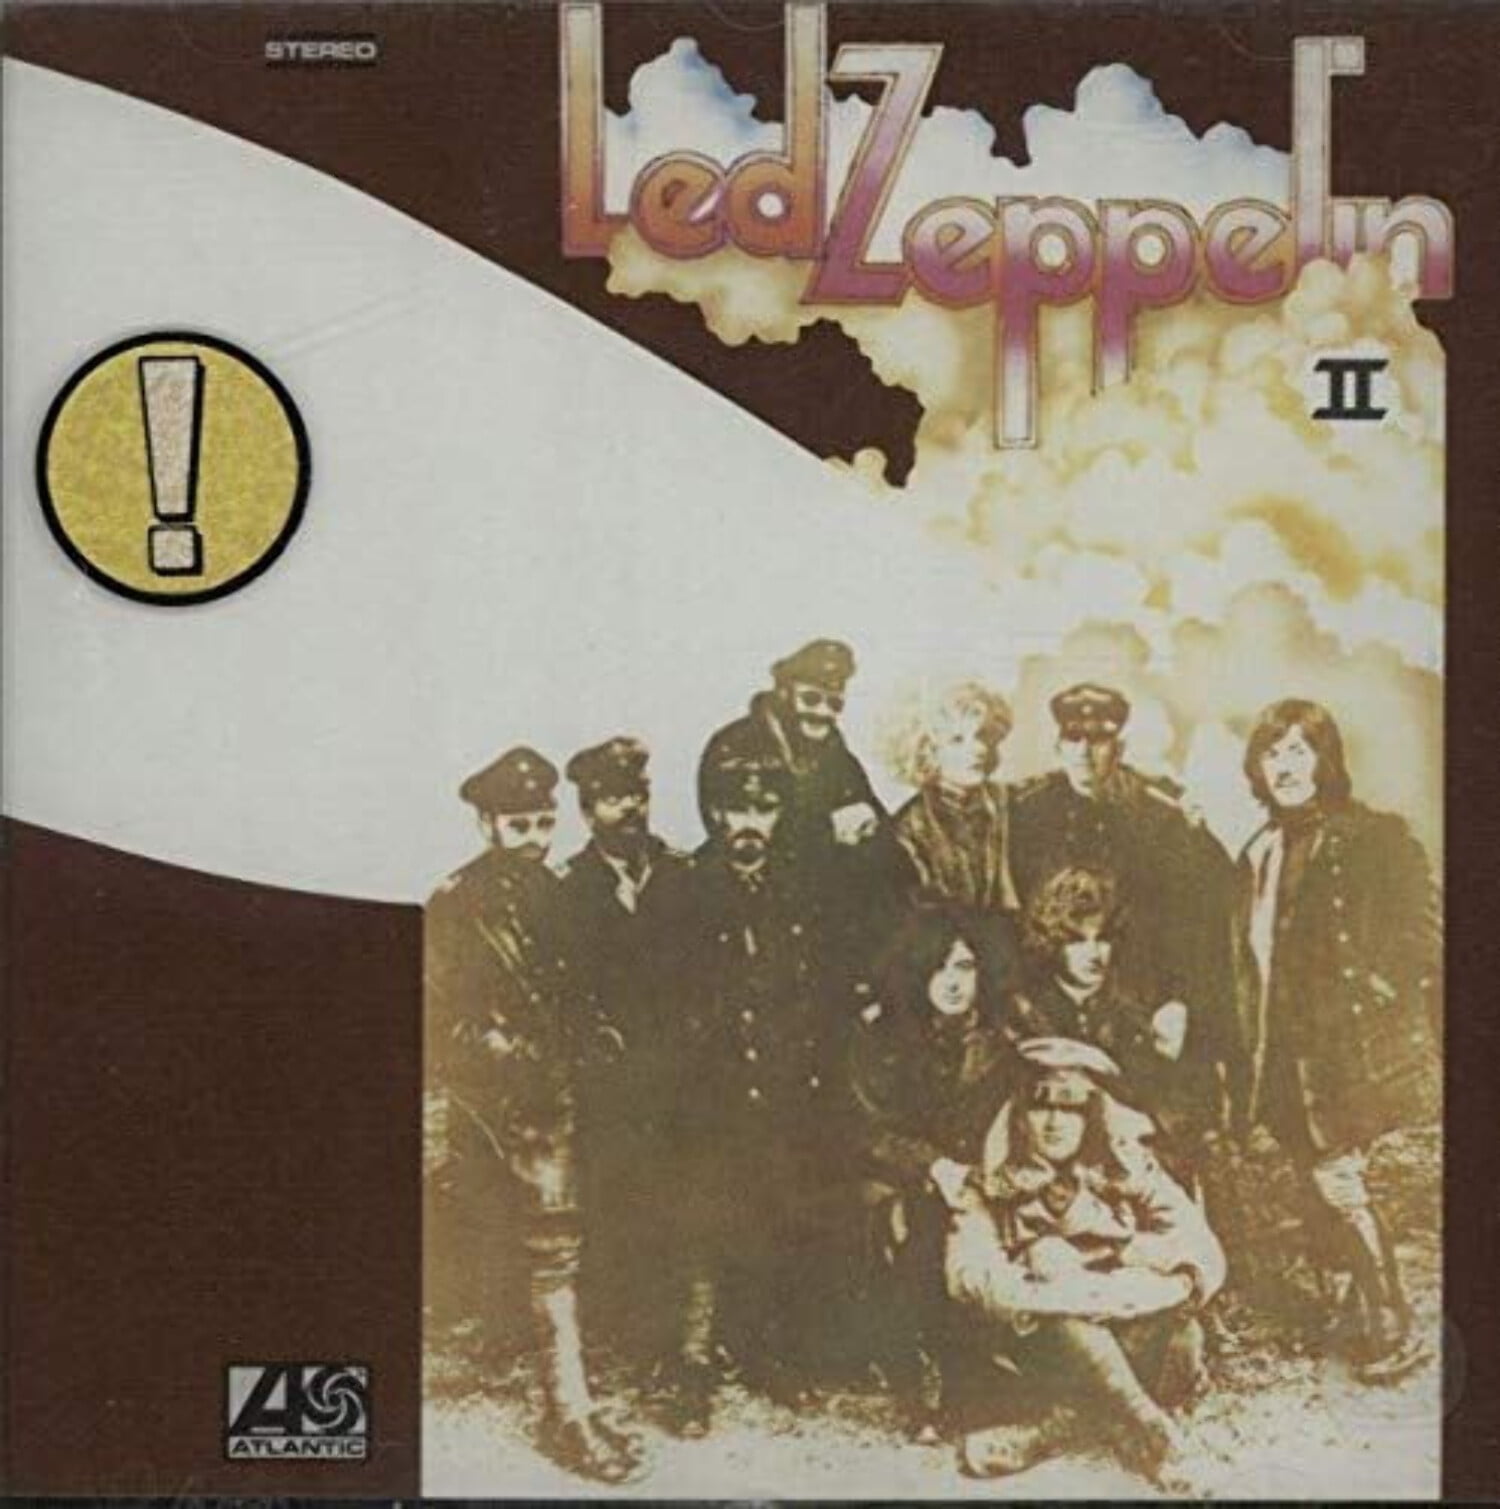 Led Zeppelin 2 (CD) (Remaster) 